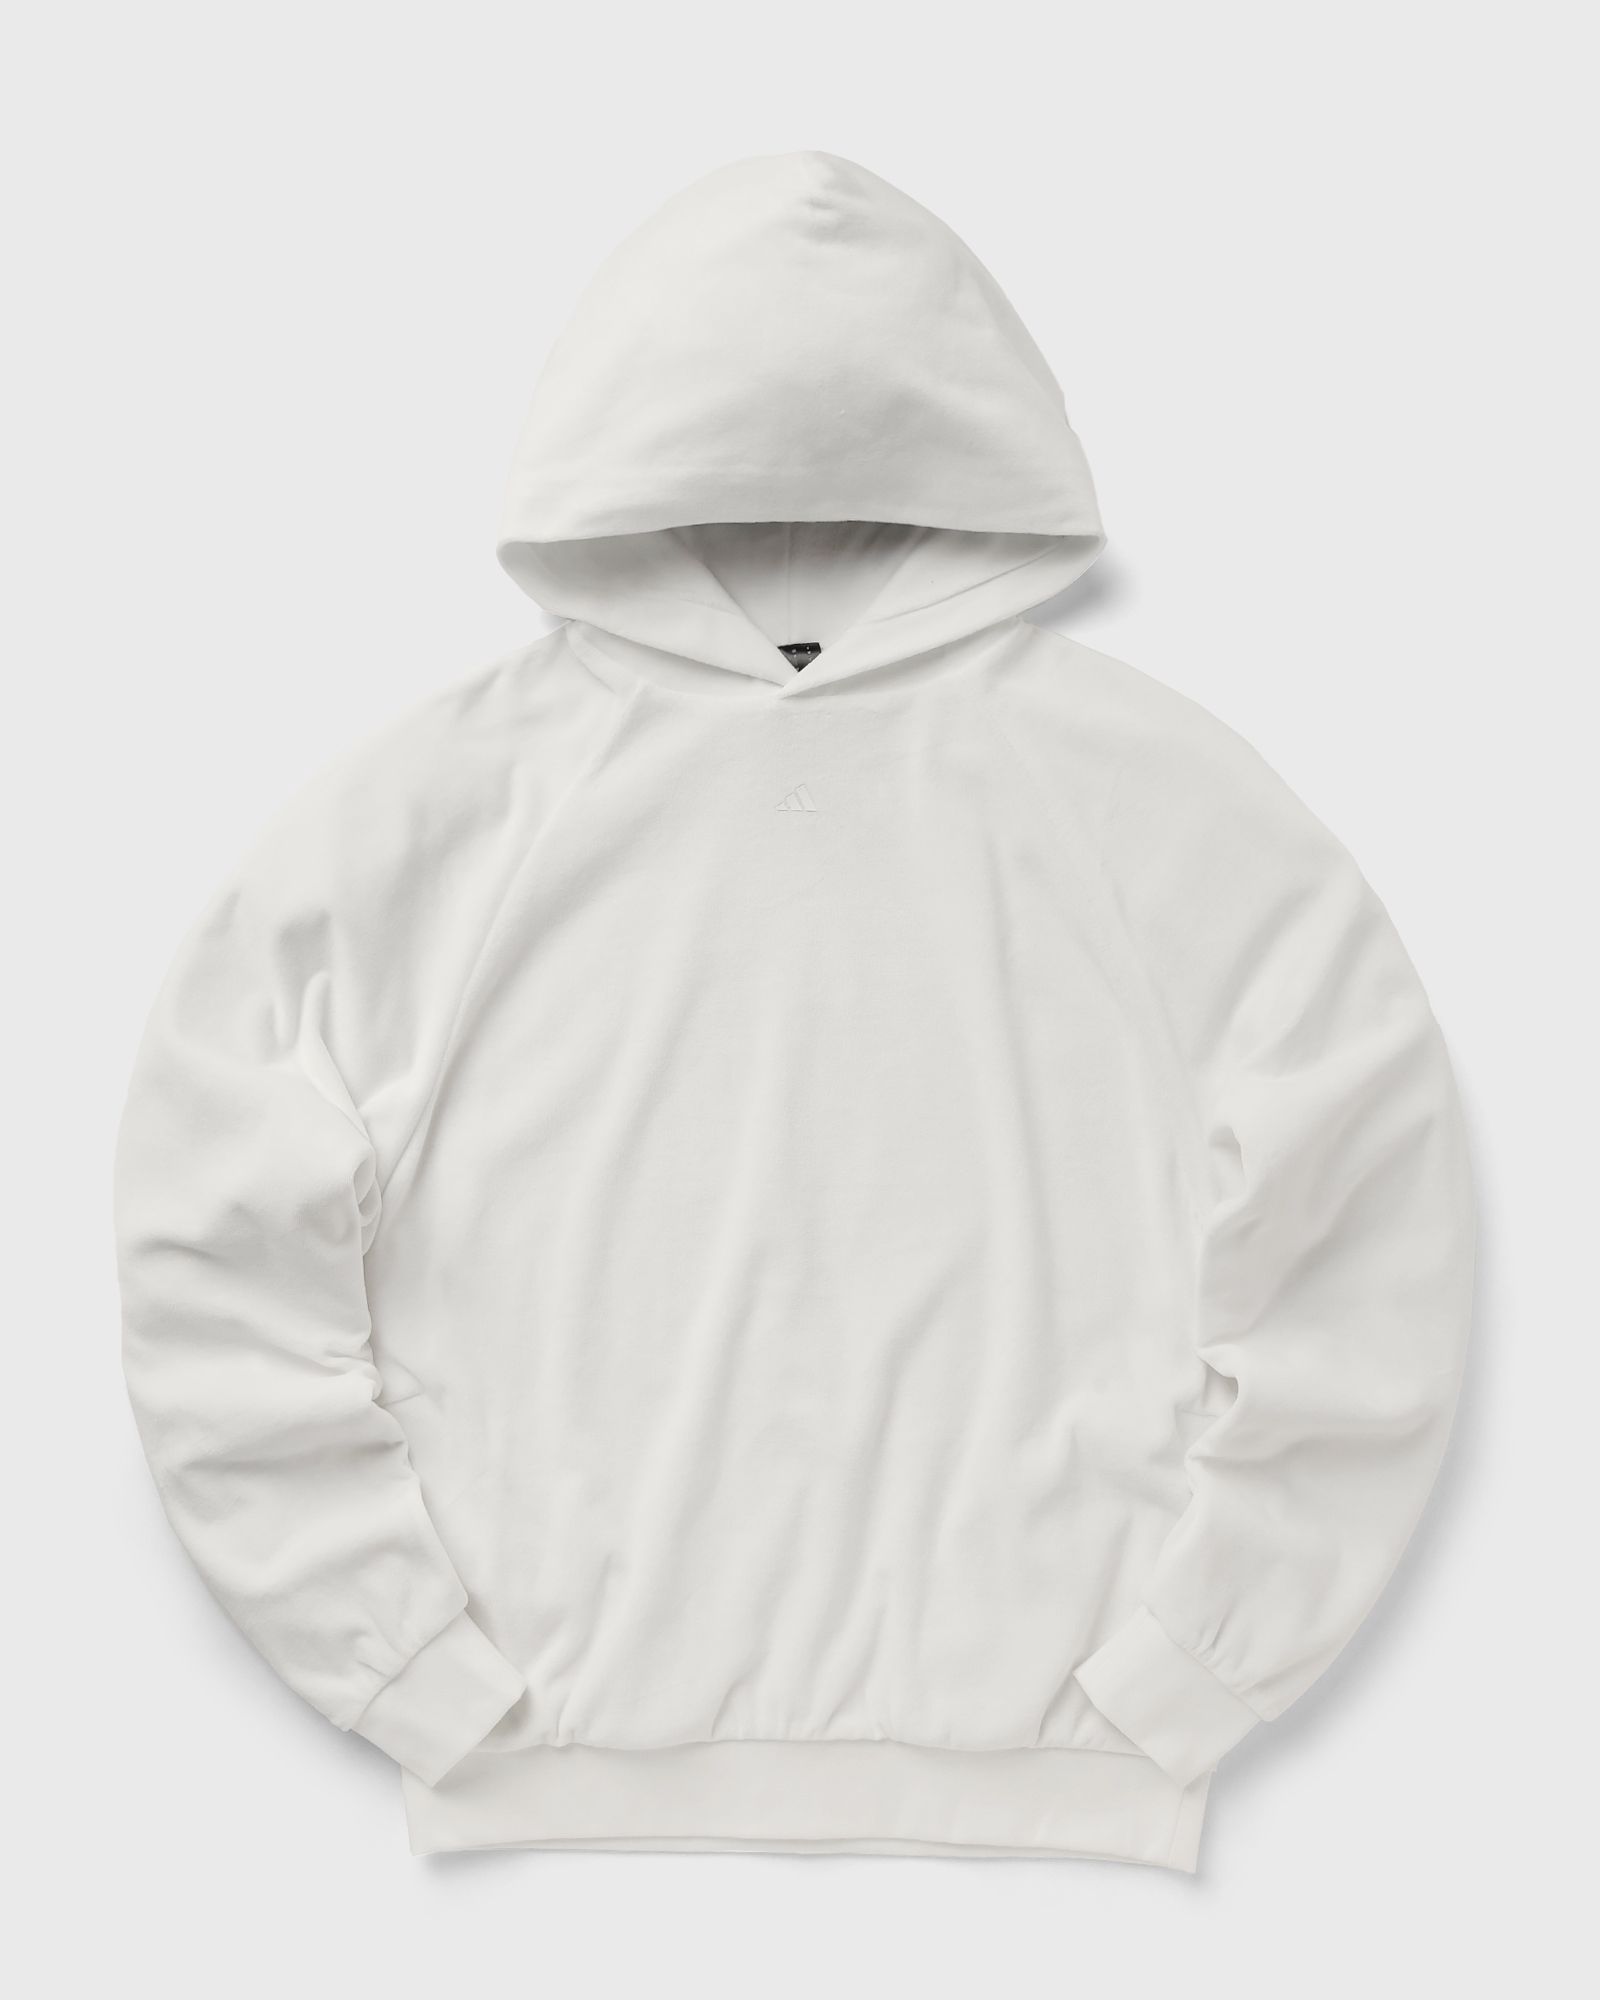 Adidas - basketball velour hoodie men hoodies white in größe:l